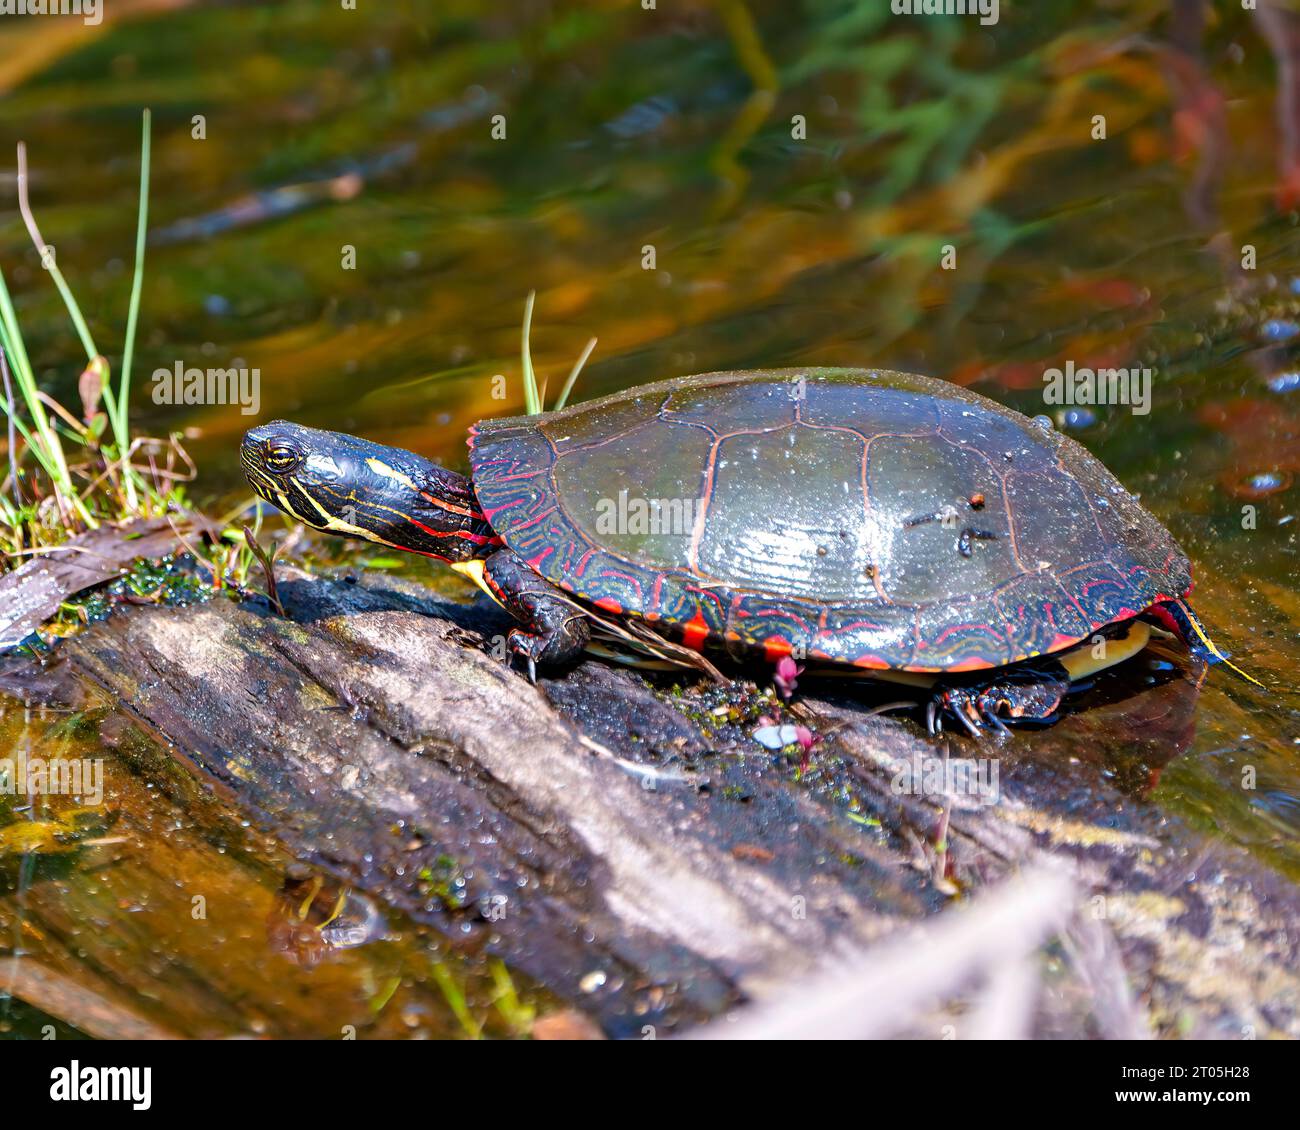 Tortuga pintada descansando sobre un tronco de musgo en el estanque con vegetación de pantano y mostrando su caparazón de tortuga, cabeza, patas en su entorno y hábitat. Foto de stock